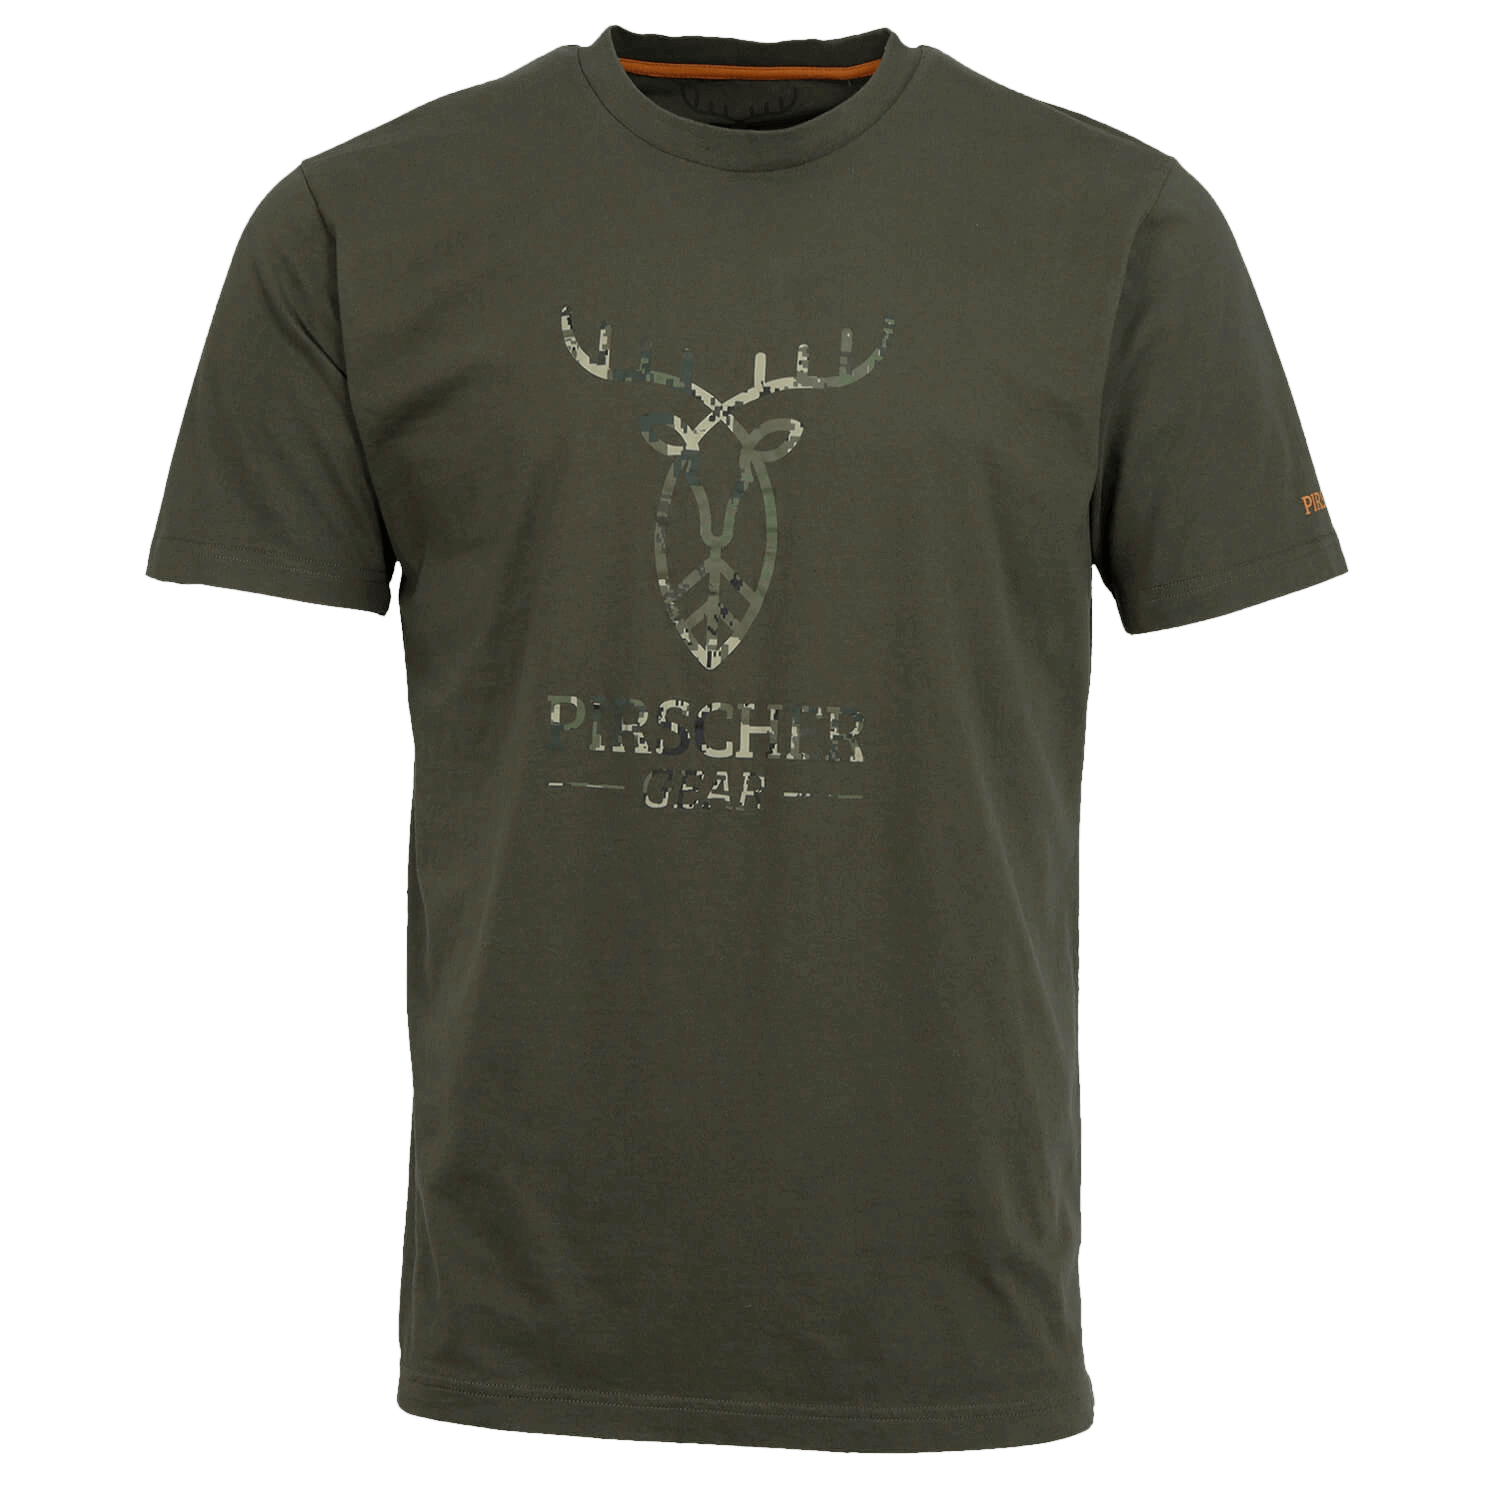 Pirscher Gear T-Shirt Full Logo (Optimax) - Sommer-Jagdbekleidung